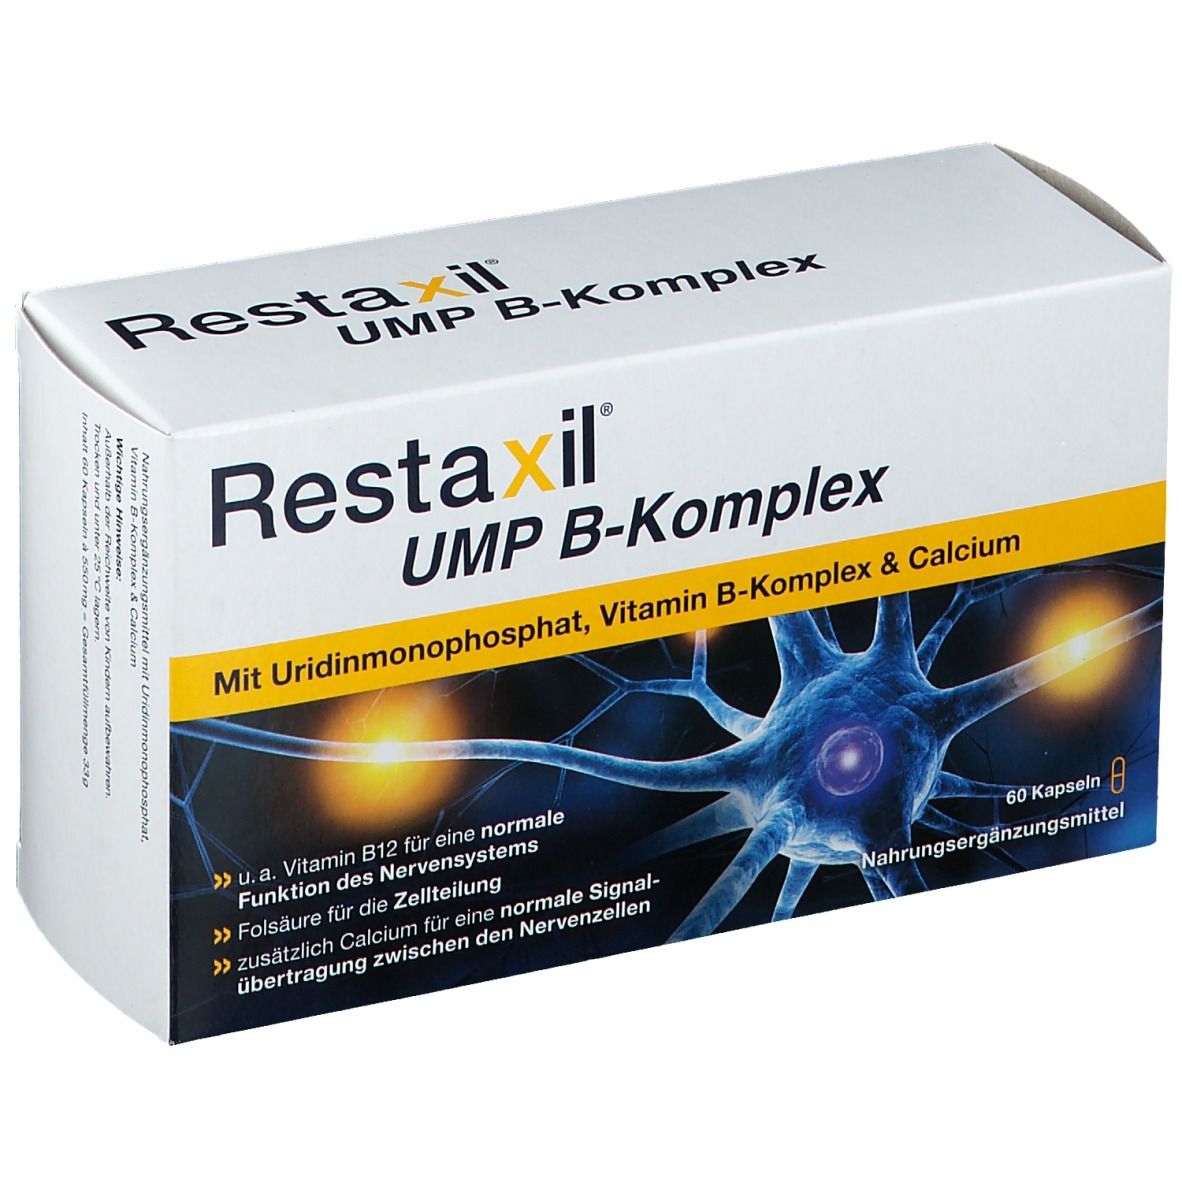 Restaxil® UMP B complex